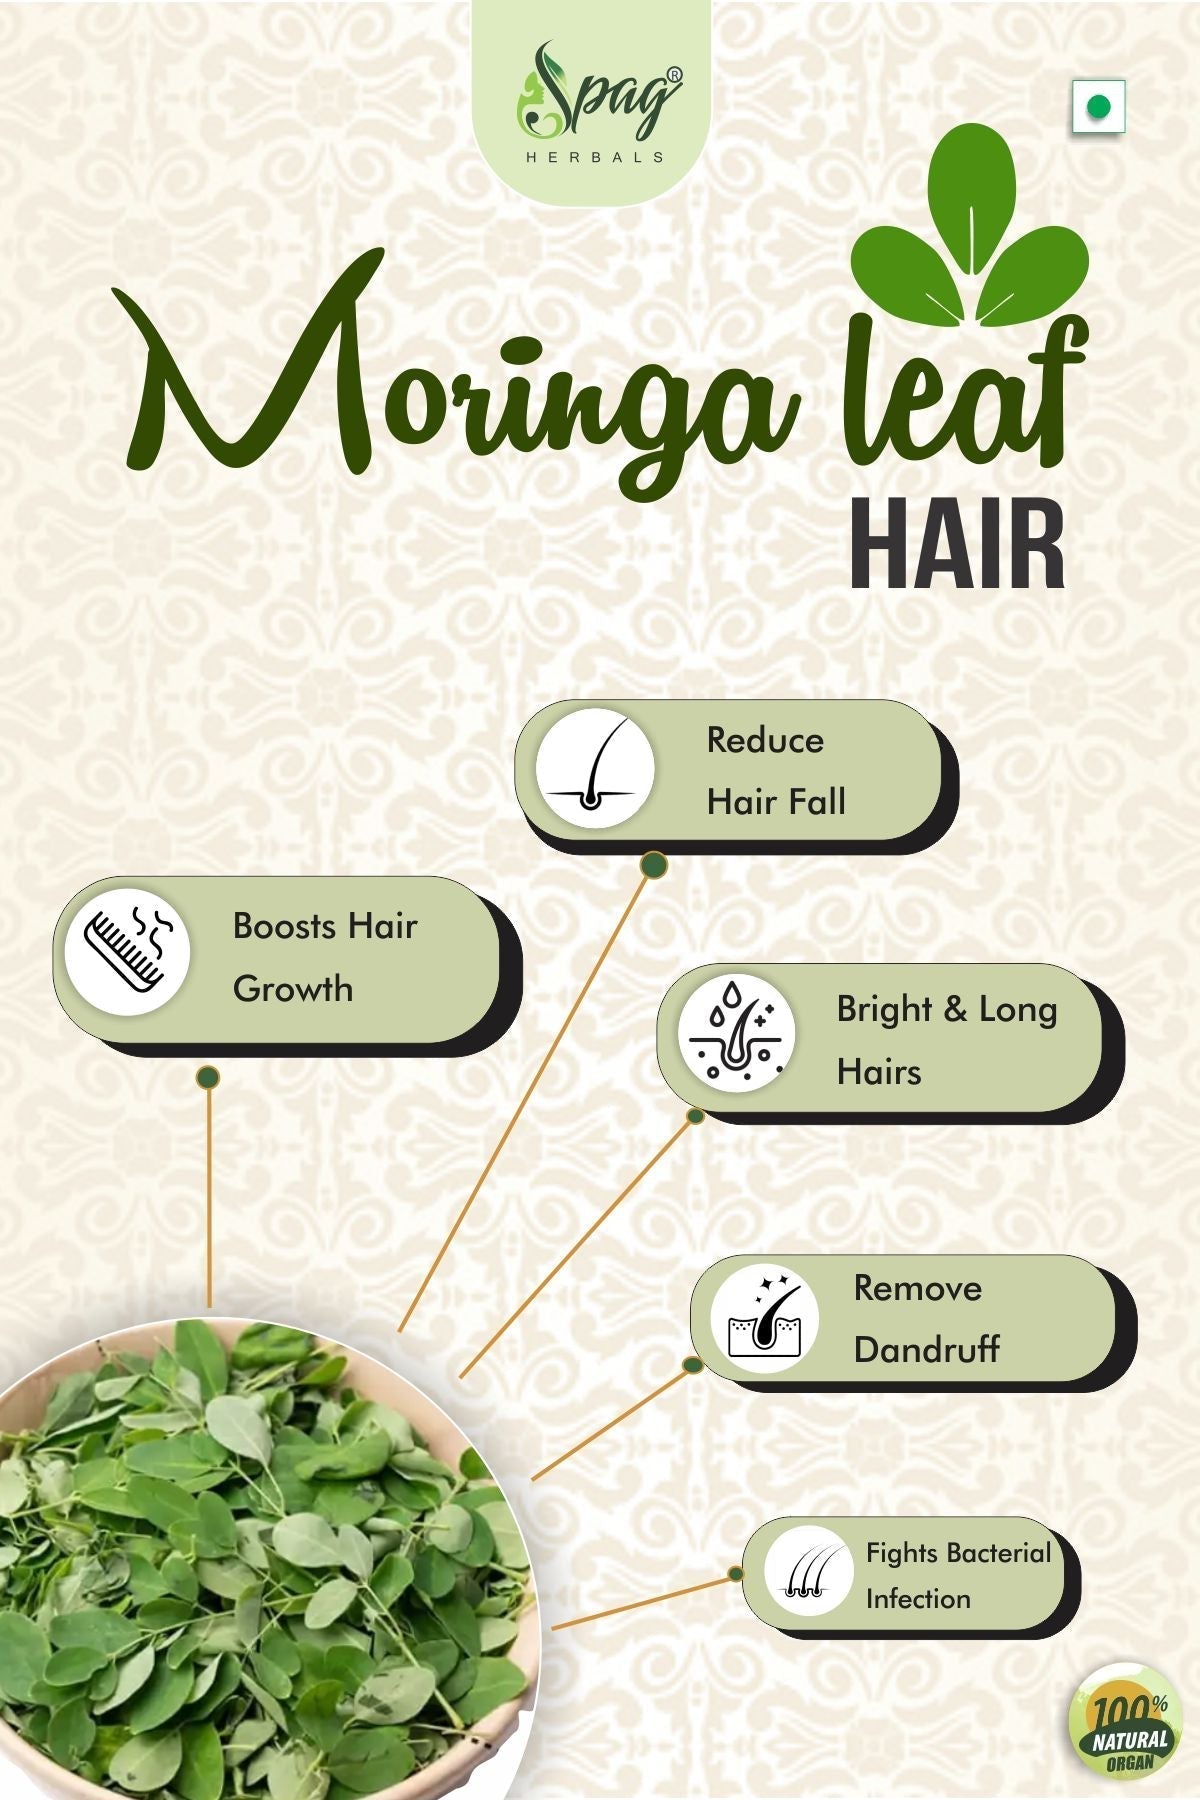 Spag Herbals Premium Moringa Leaf Powder